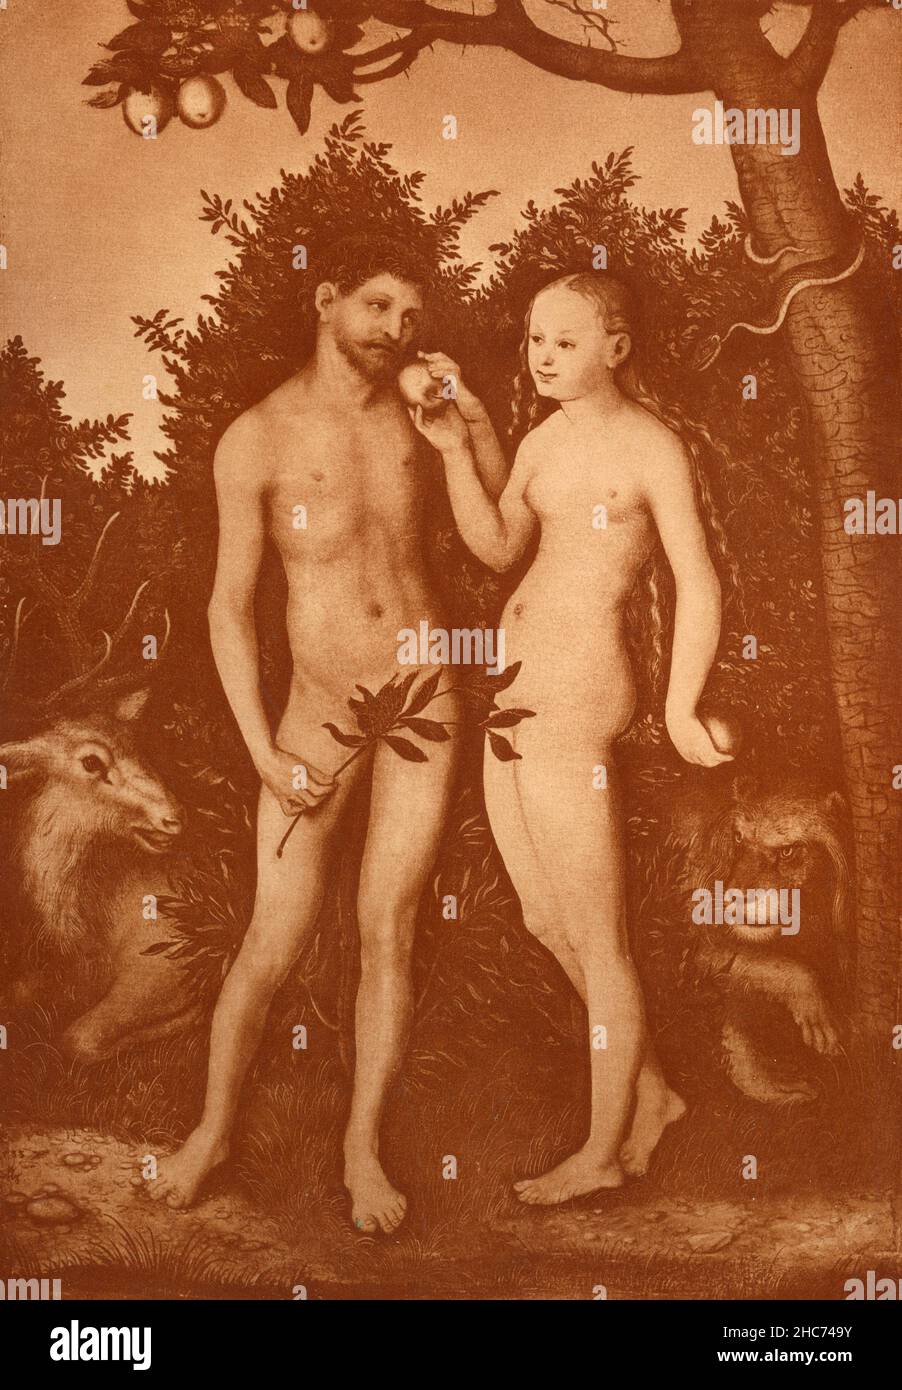 Adam et Eve au paradis, peinture de l'artiste allemand Lucas Cranach, Munich 1897 Banque D'Images